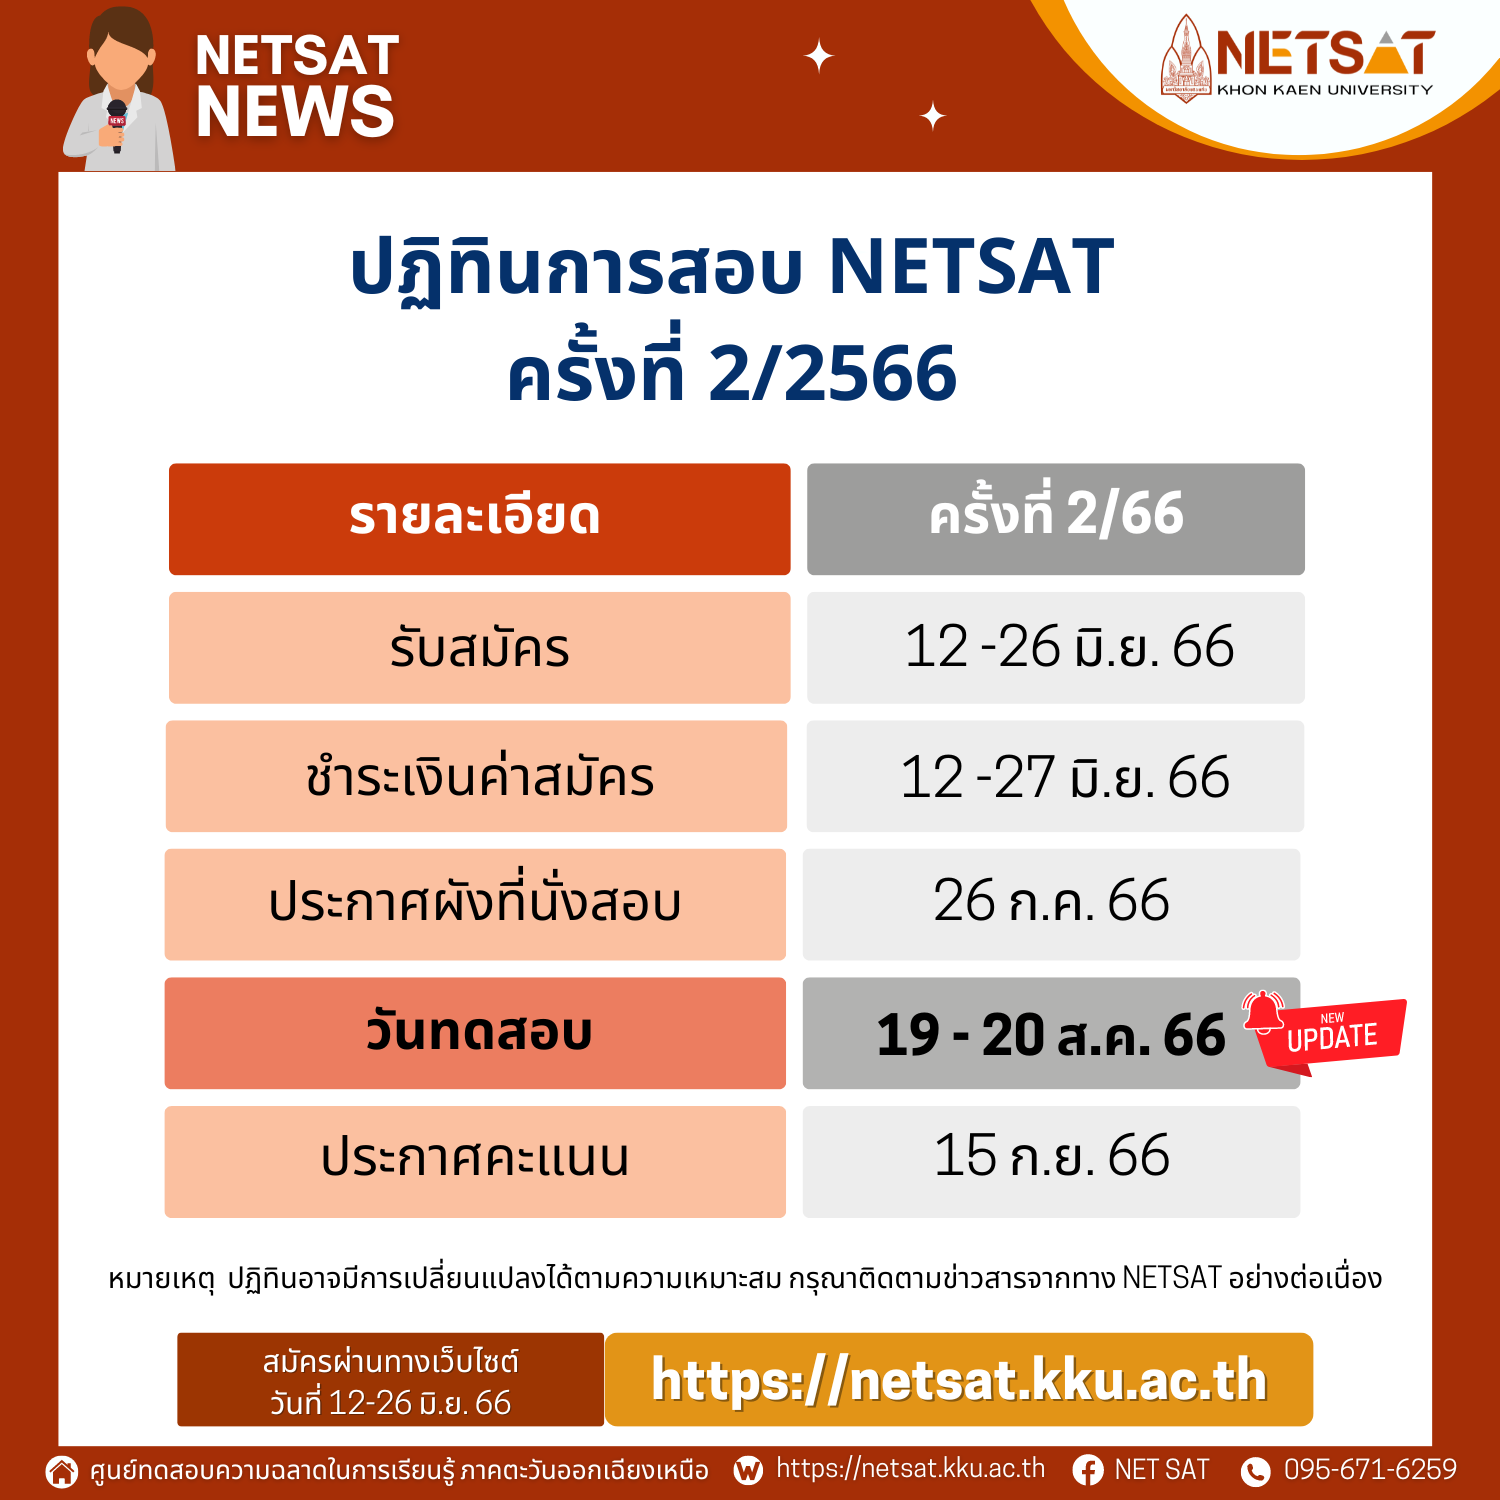 ประกาศรับสมัคร NETSAT ครั้งที่ 2/2566